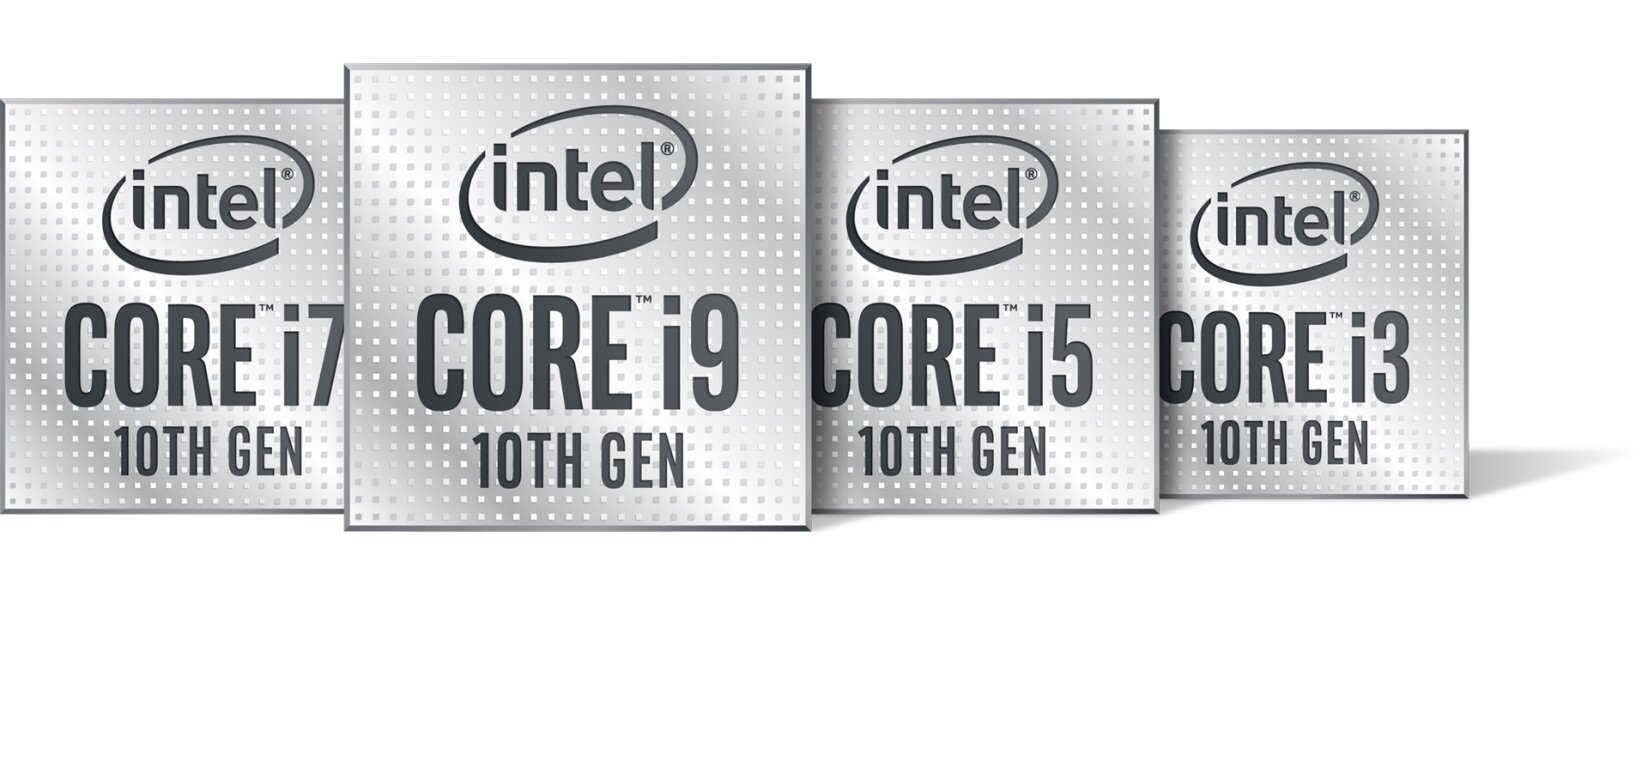 Η Intel ανακοίνωσε την 10η γενιά επεξεργαστών Core «Comet Lake» για υπολογιστές desktop